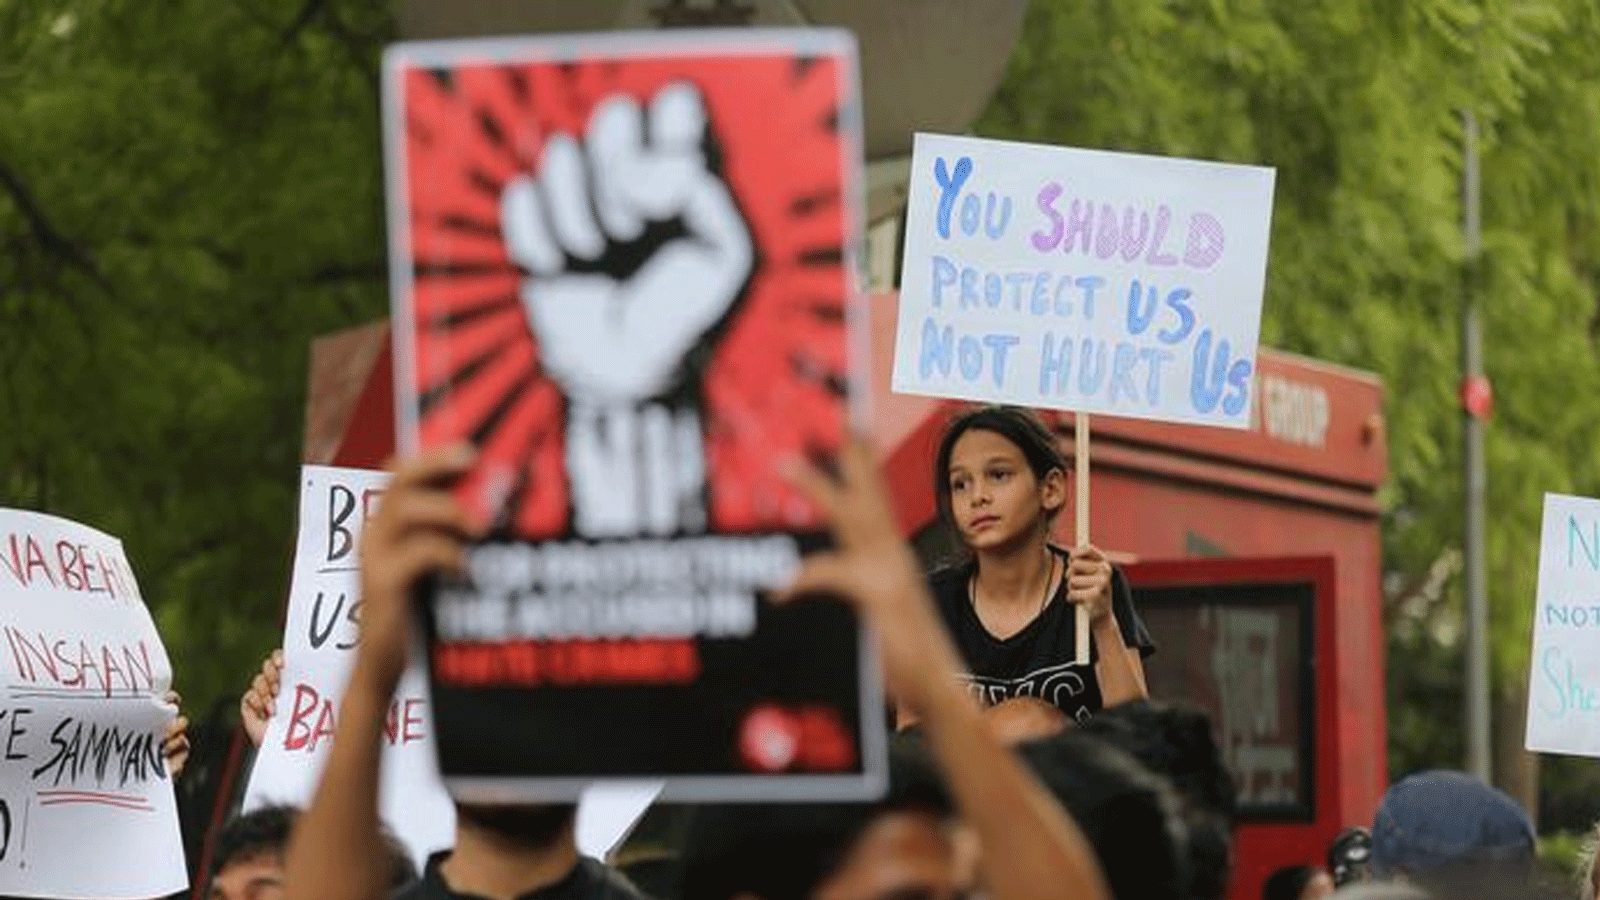 المتظاهرون في الهند يطالبون بالعدالة بعد سلسلة من الاعتداءات الجنسية على النساء والفتيات(dpa)